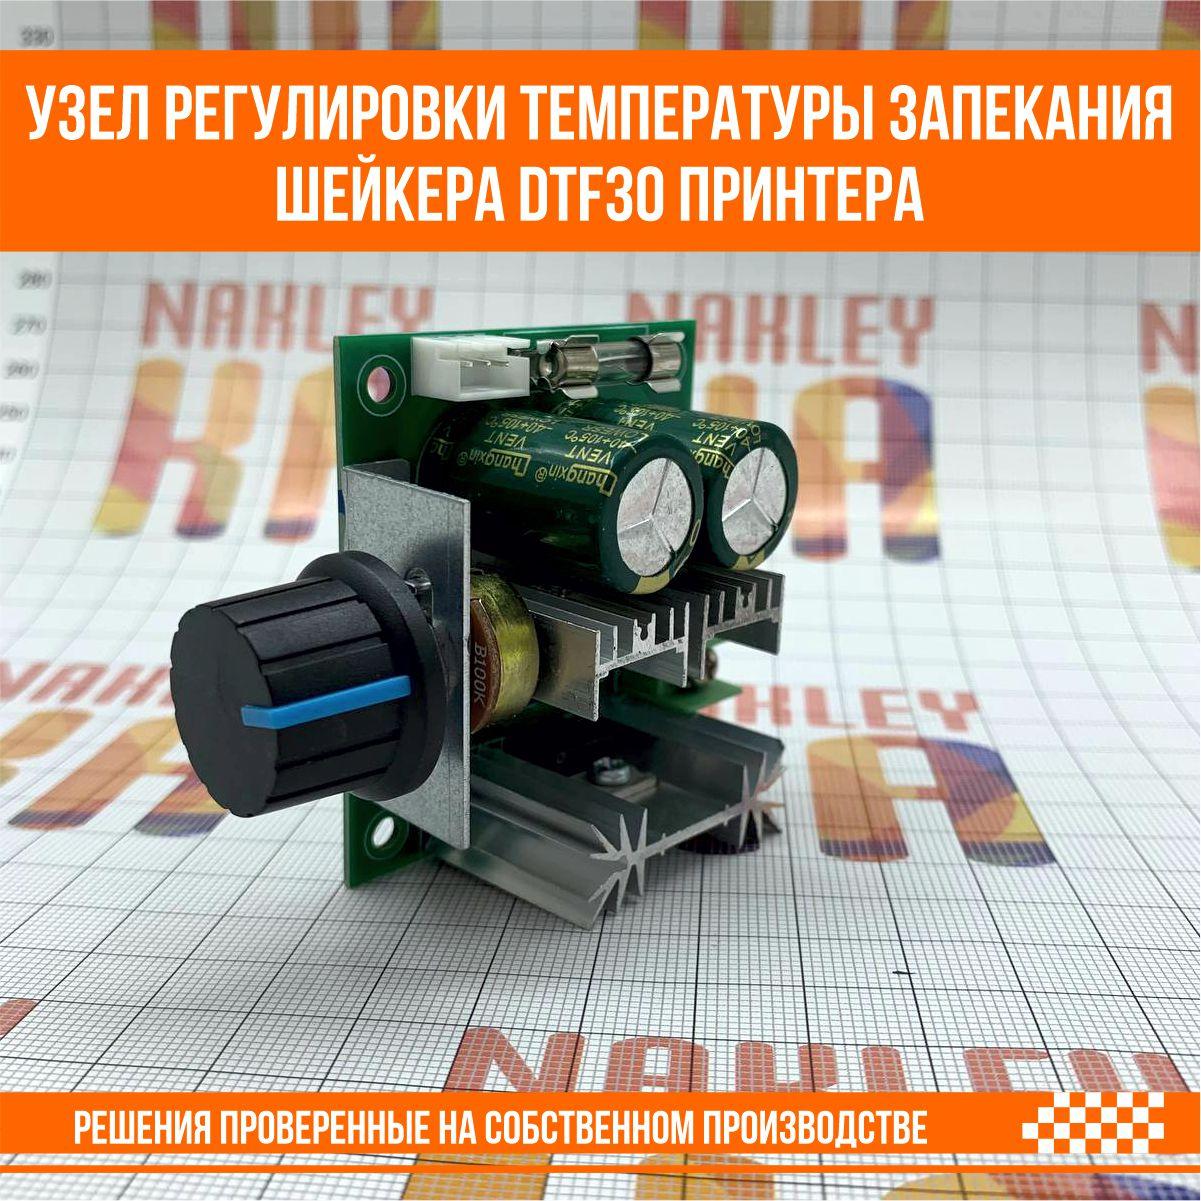 Узел регулировки температуры запекания шейкера DTF30 принтера, фото 1